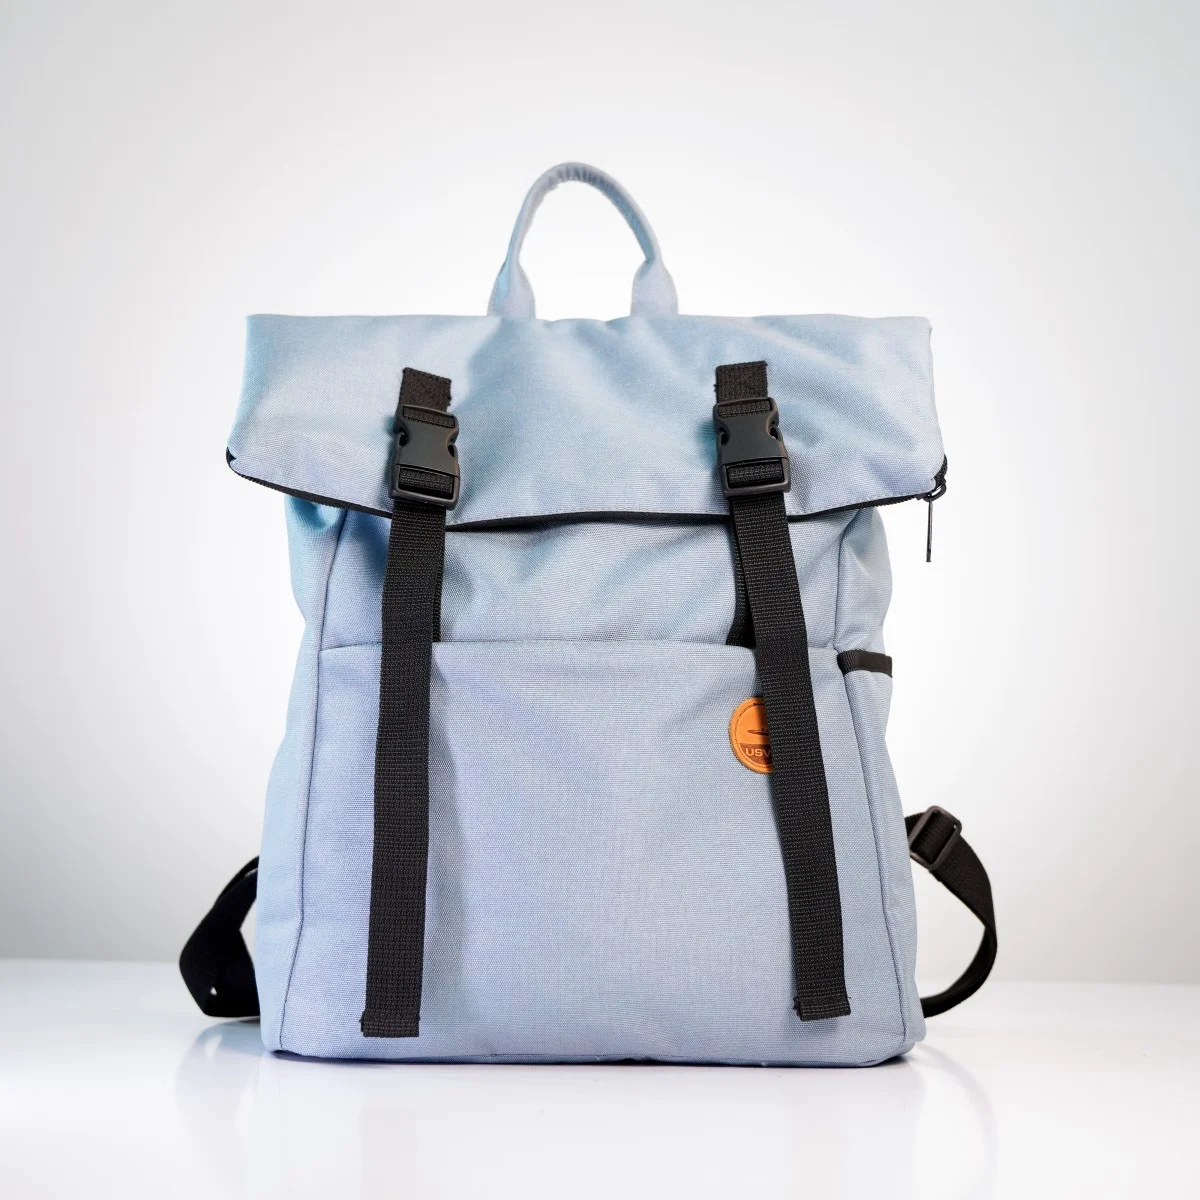 Стиль та функціональність: як обрати ідеальний рюкзак Roll Top для своїх потреб.